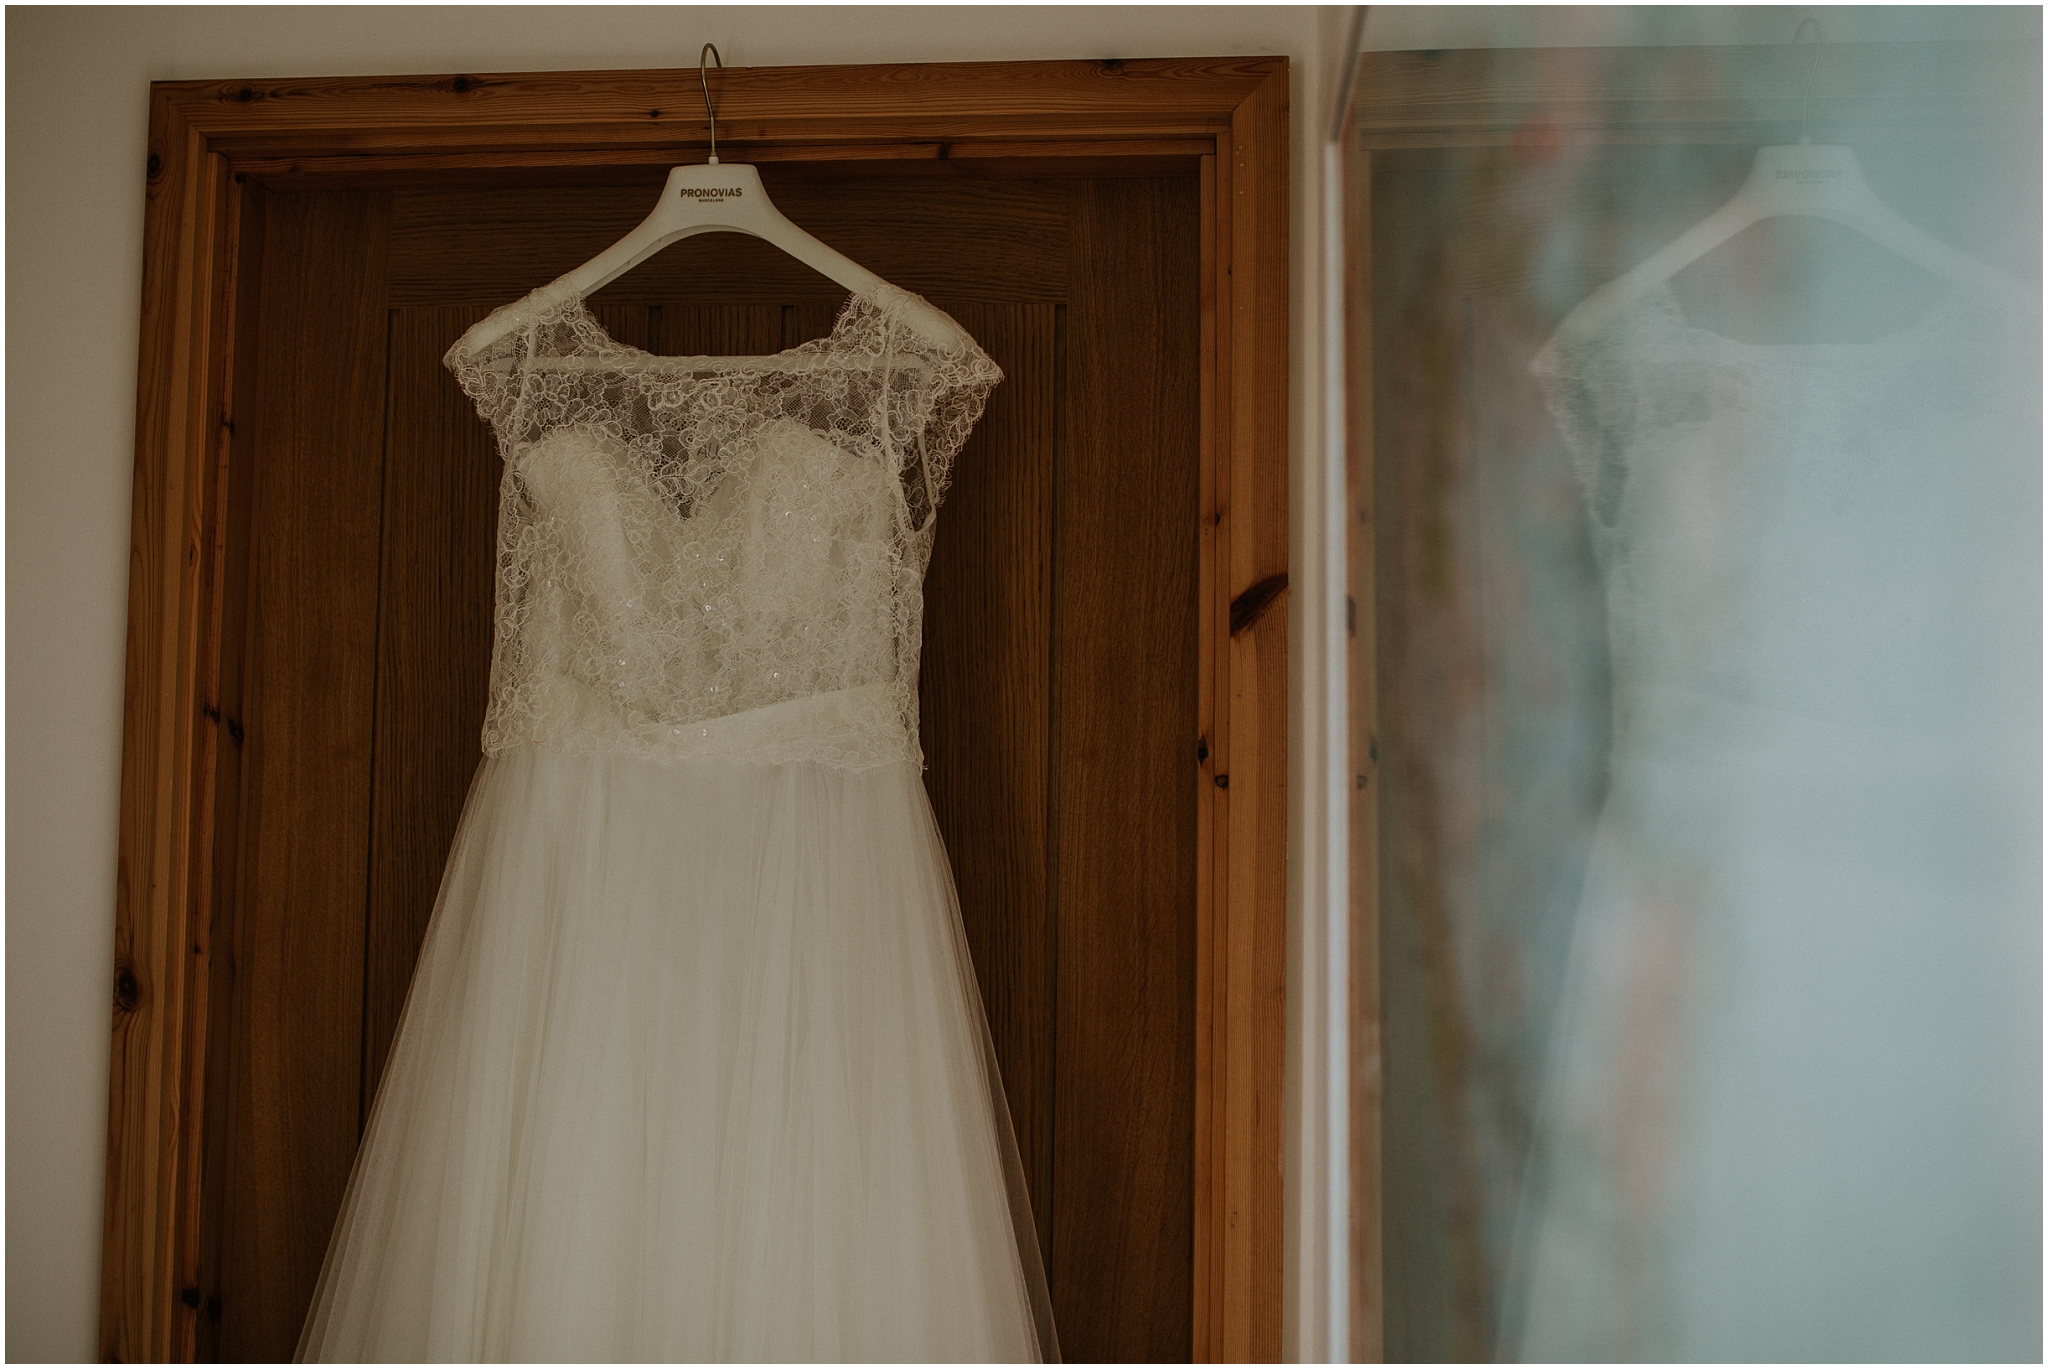 wedding dress hanging up in doorway